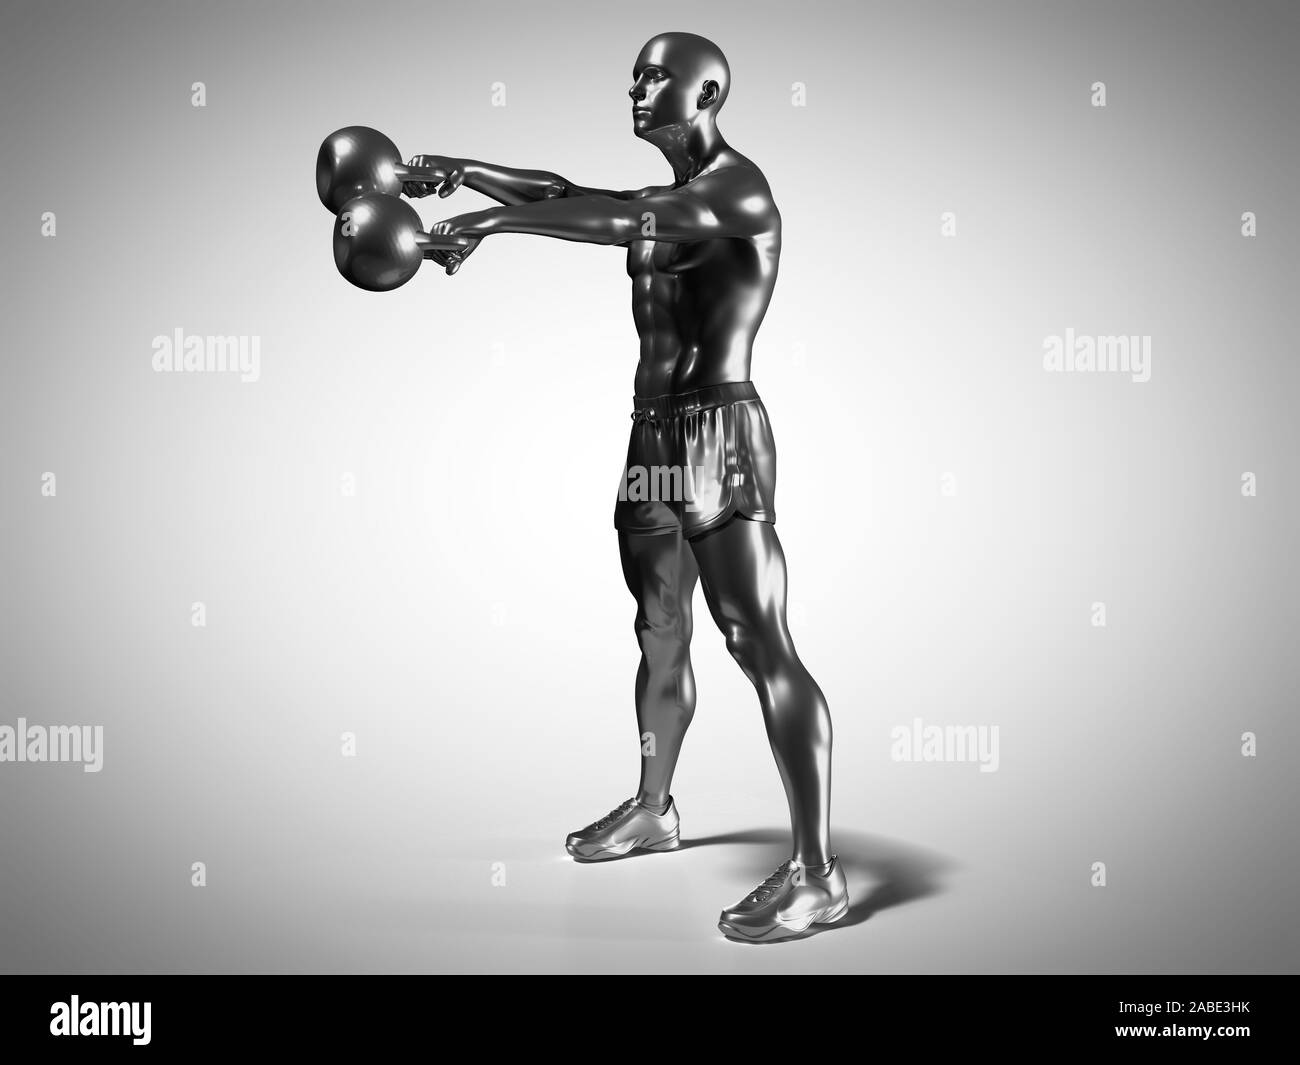 3D Rendering accurato dal punto di vista medico illustrazione di un uomo metallico facendo un allenamento kettlebell Foto Stock